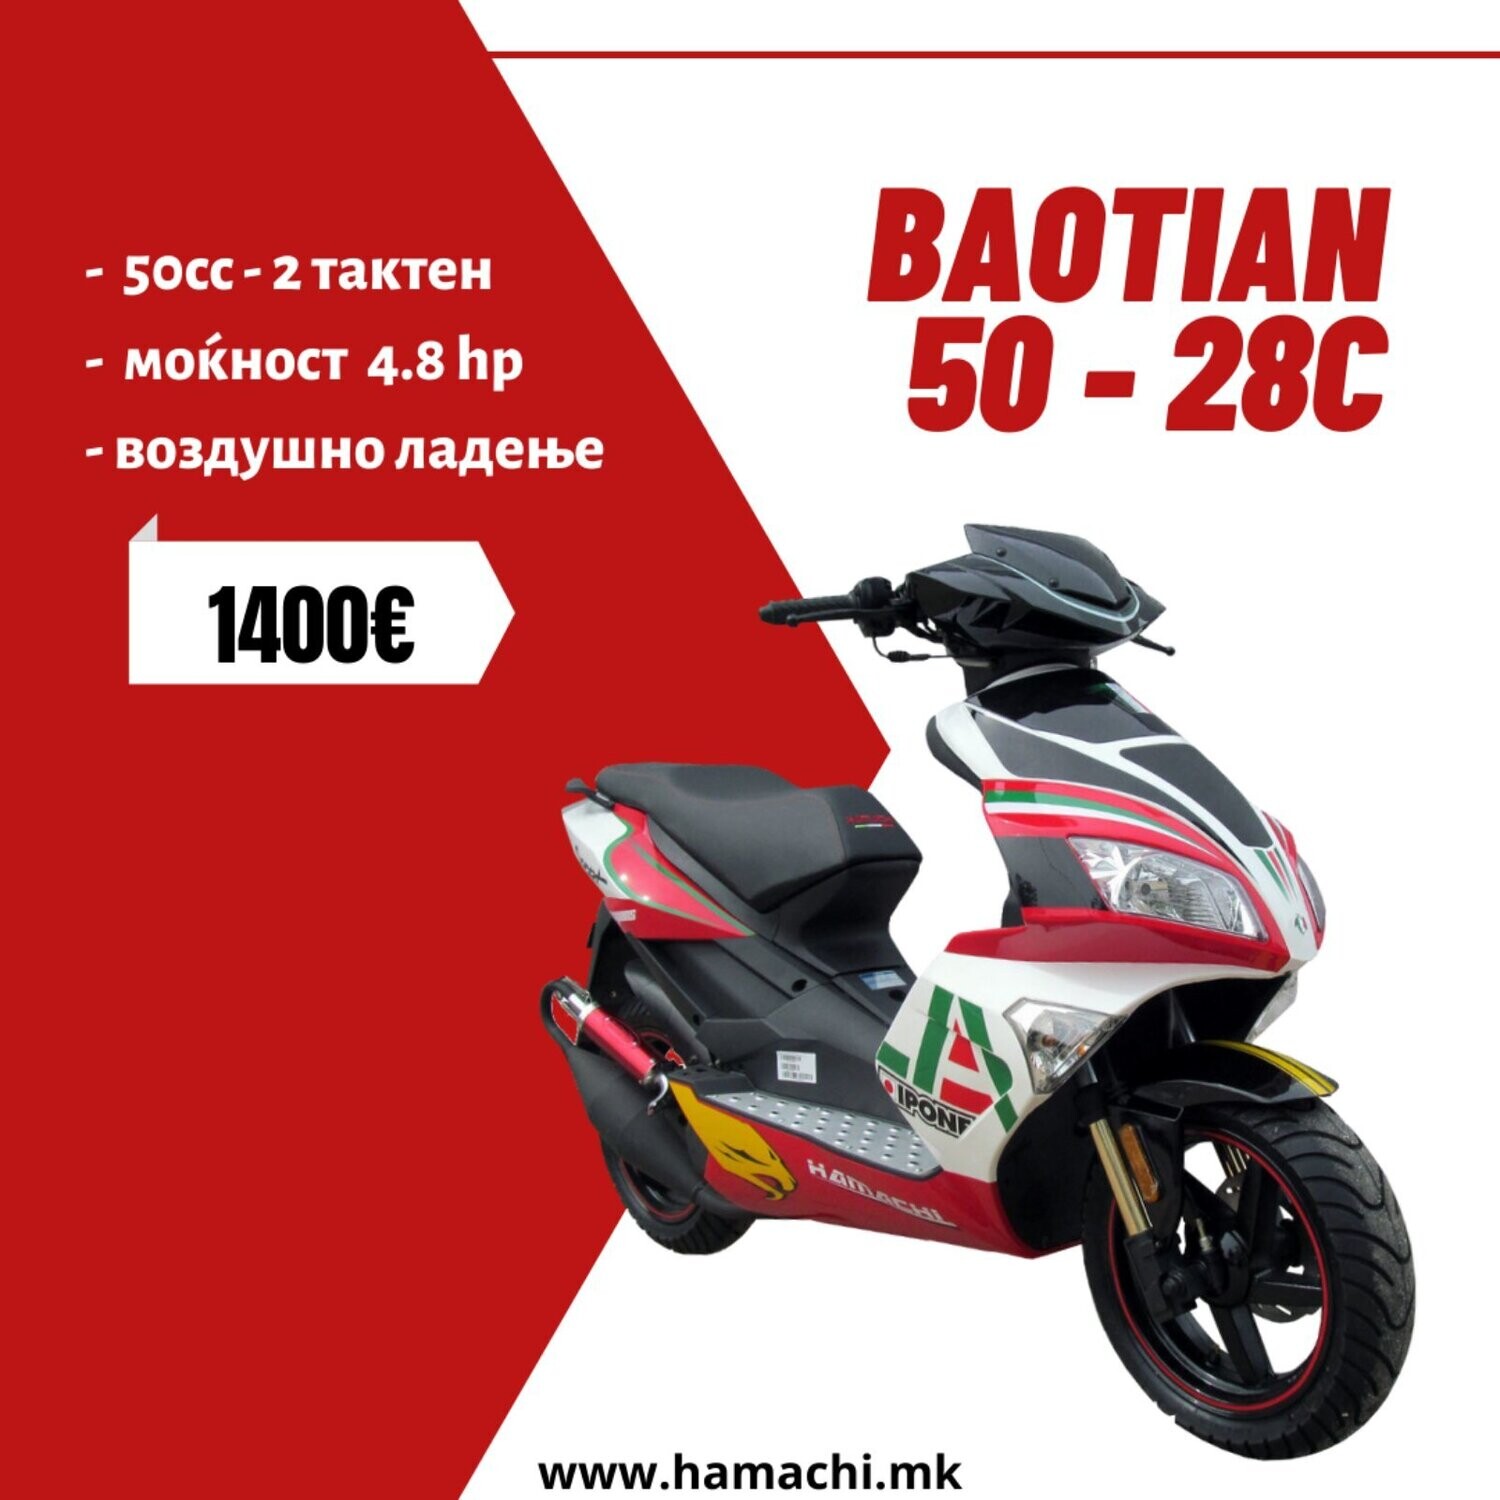 BAOTIAN 50 - 28C